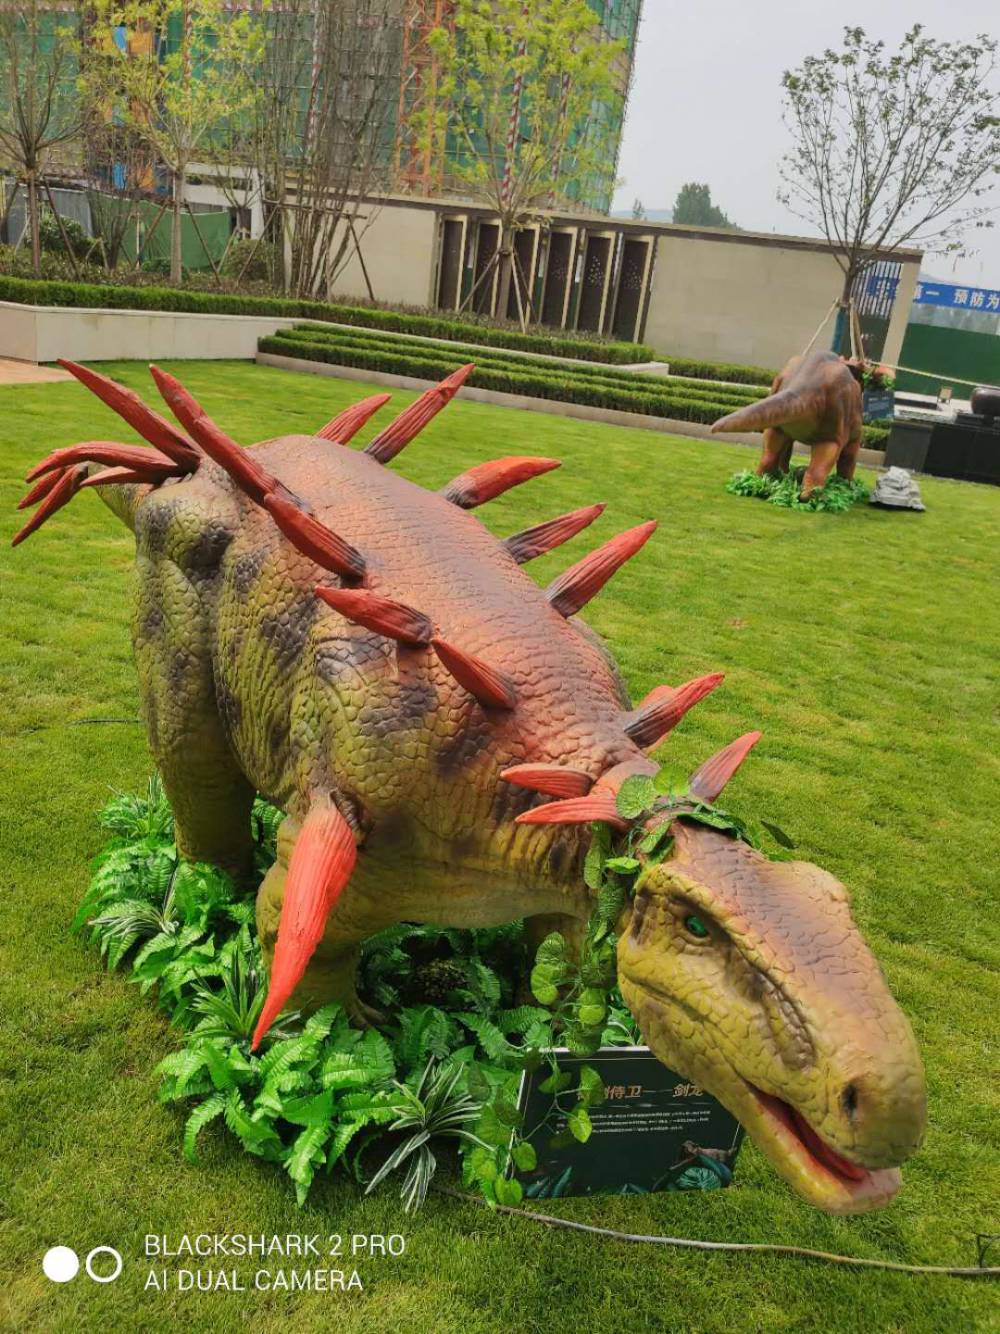 恐龙展设备出租 大型机械仿真恐龙模型出售 儿童娱乐设备租赁